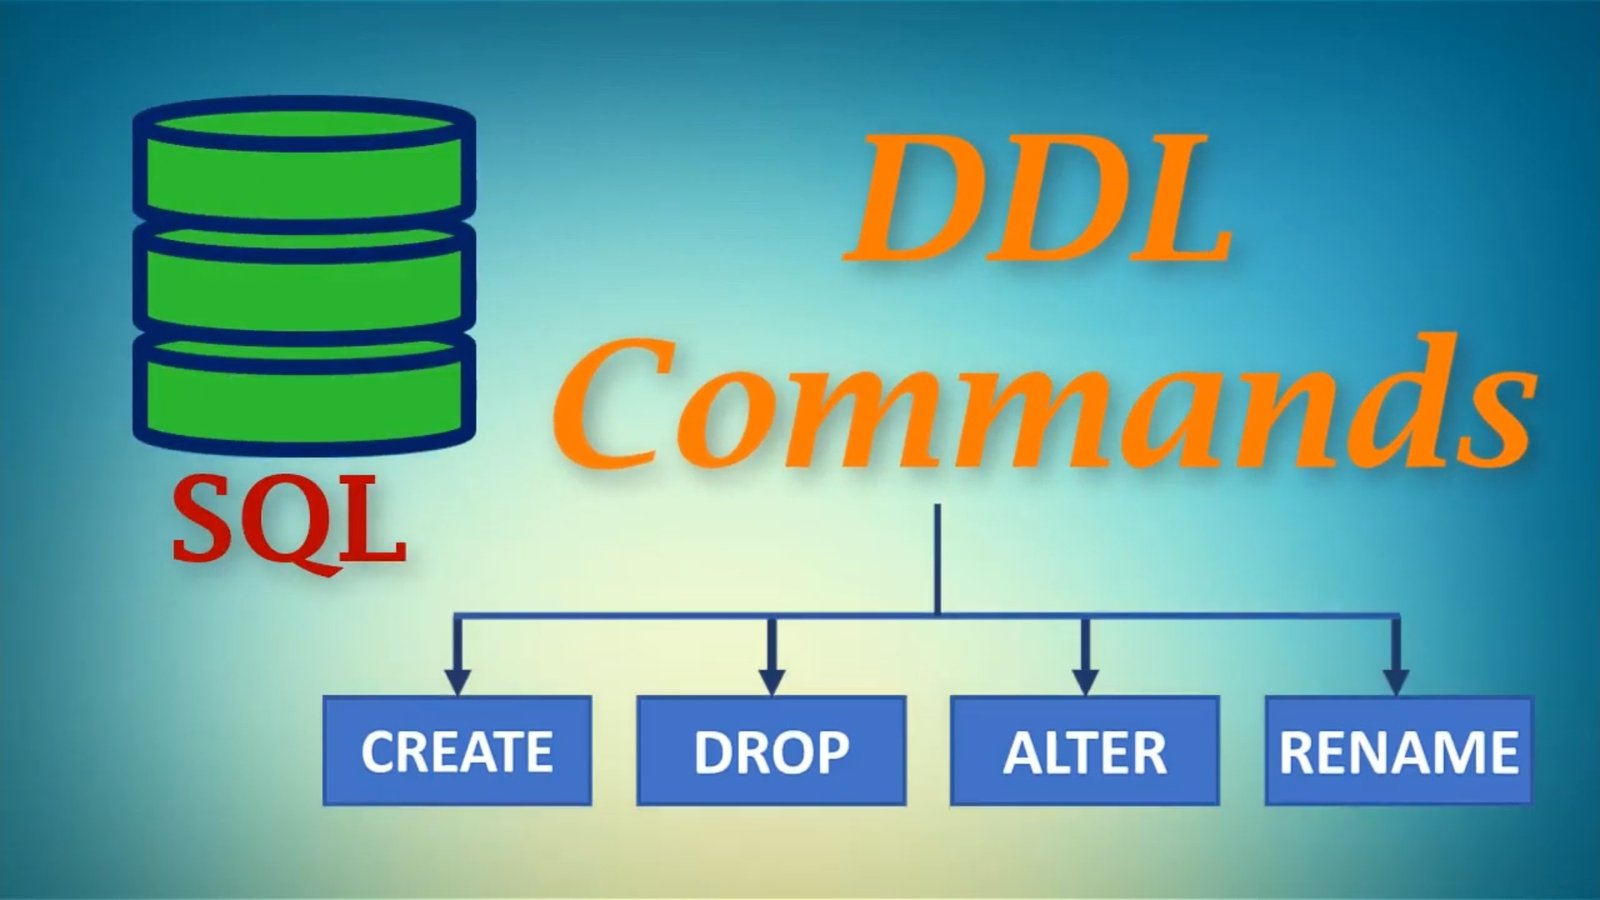 Ddl это. Операторы SQL DDL DML. DML SQL команды. DDL Commands SQL. Command database.